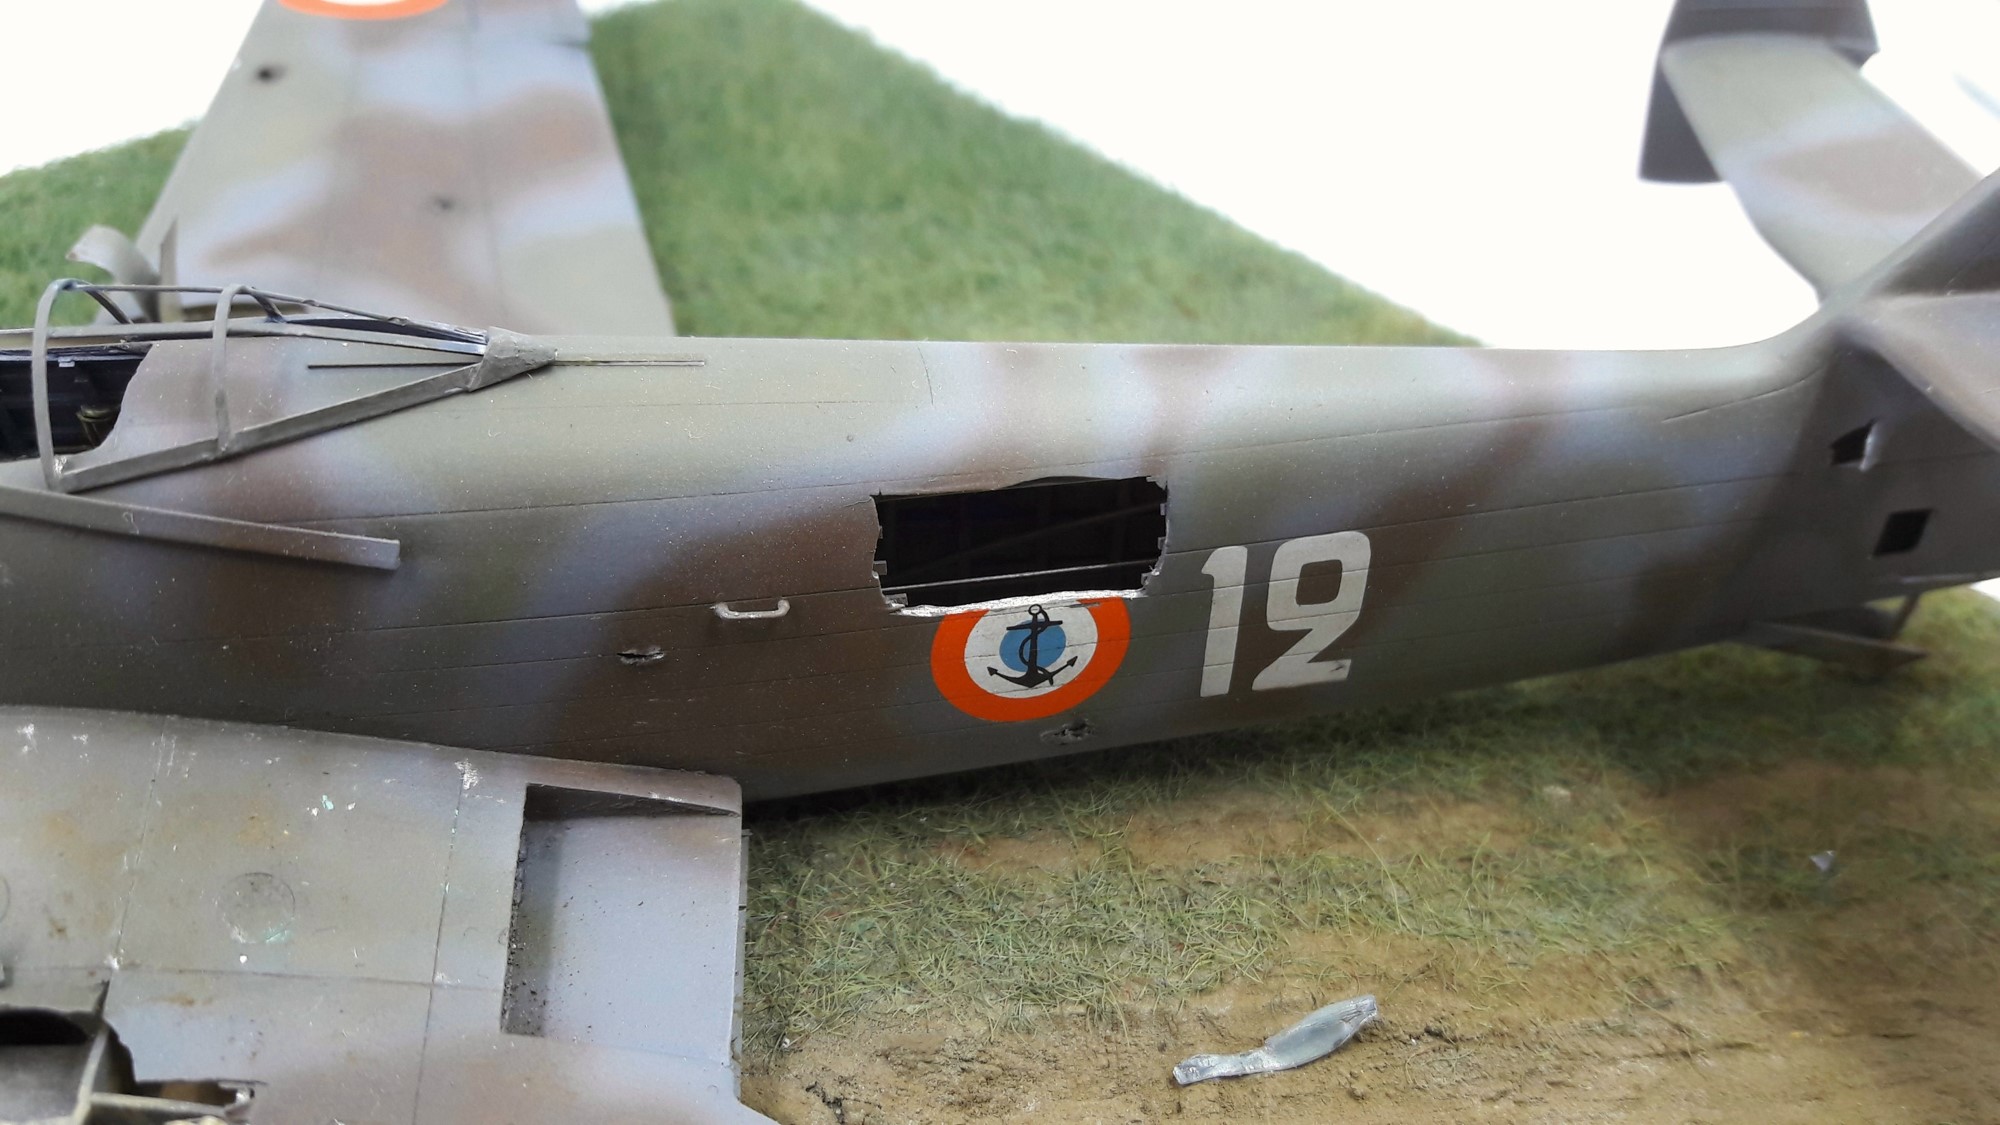 [Concours Aéronavale] Loire Nieuport 401/411 -  Special hobby 1/48 - crash à Villereau -le sacrifice des marins aviateurs du 19 mai 1940 - Mission Berlaimont  Image929